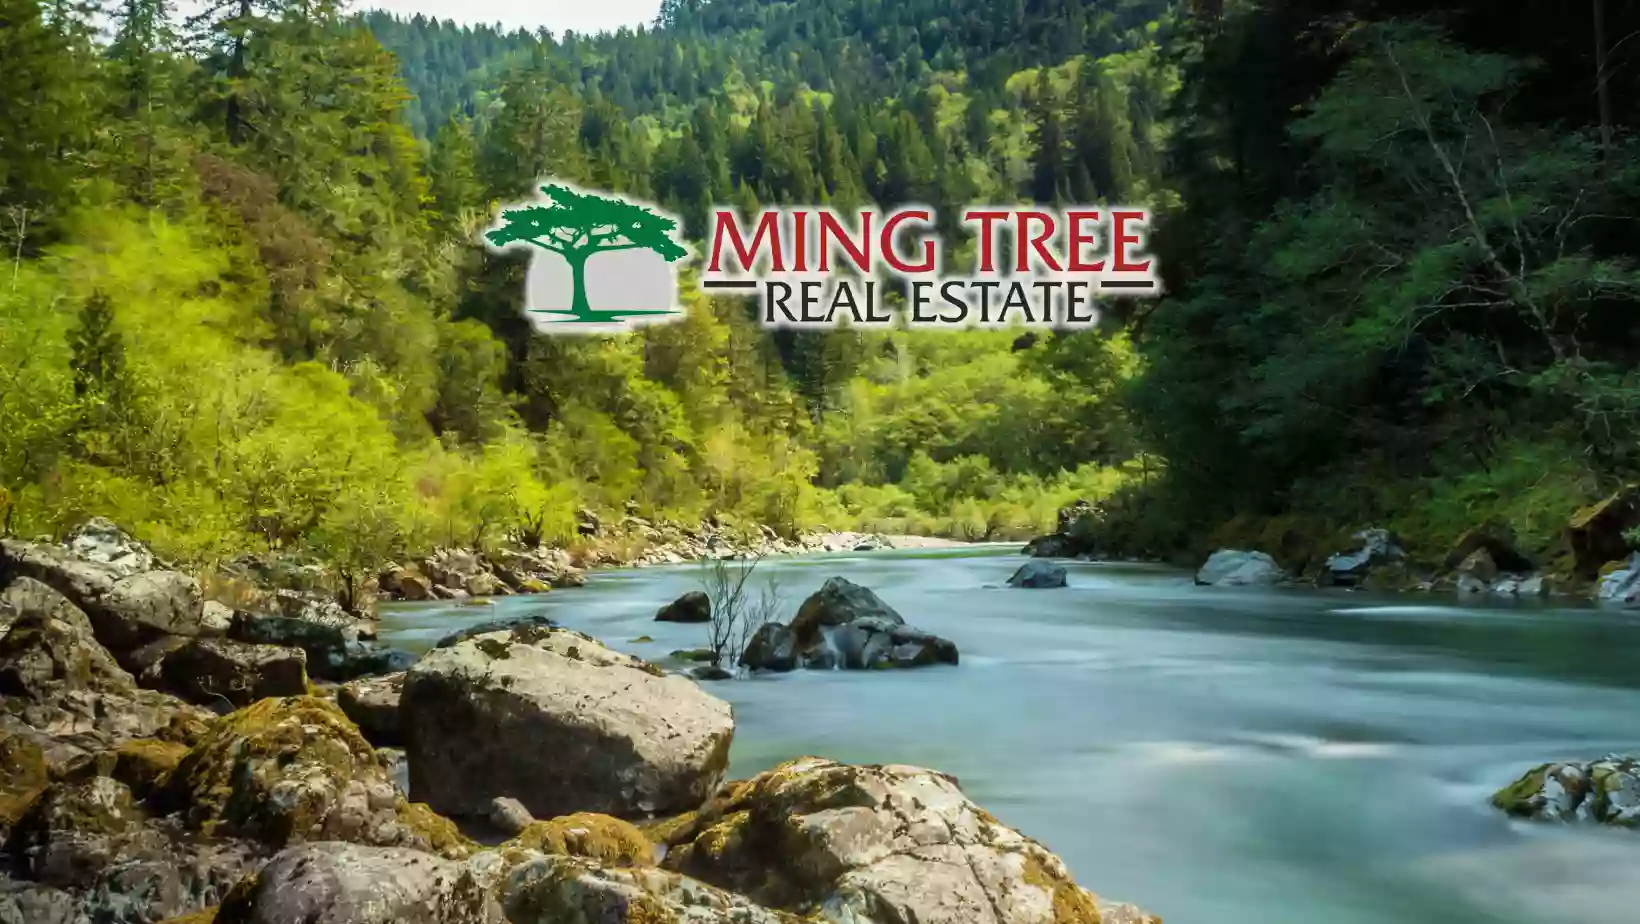 Ming Tree Real Estate